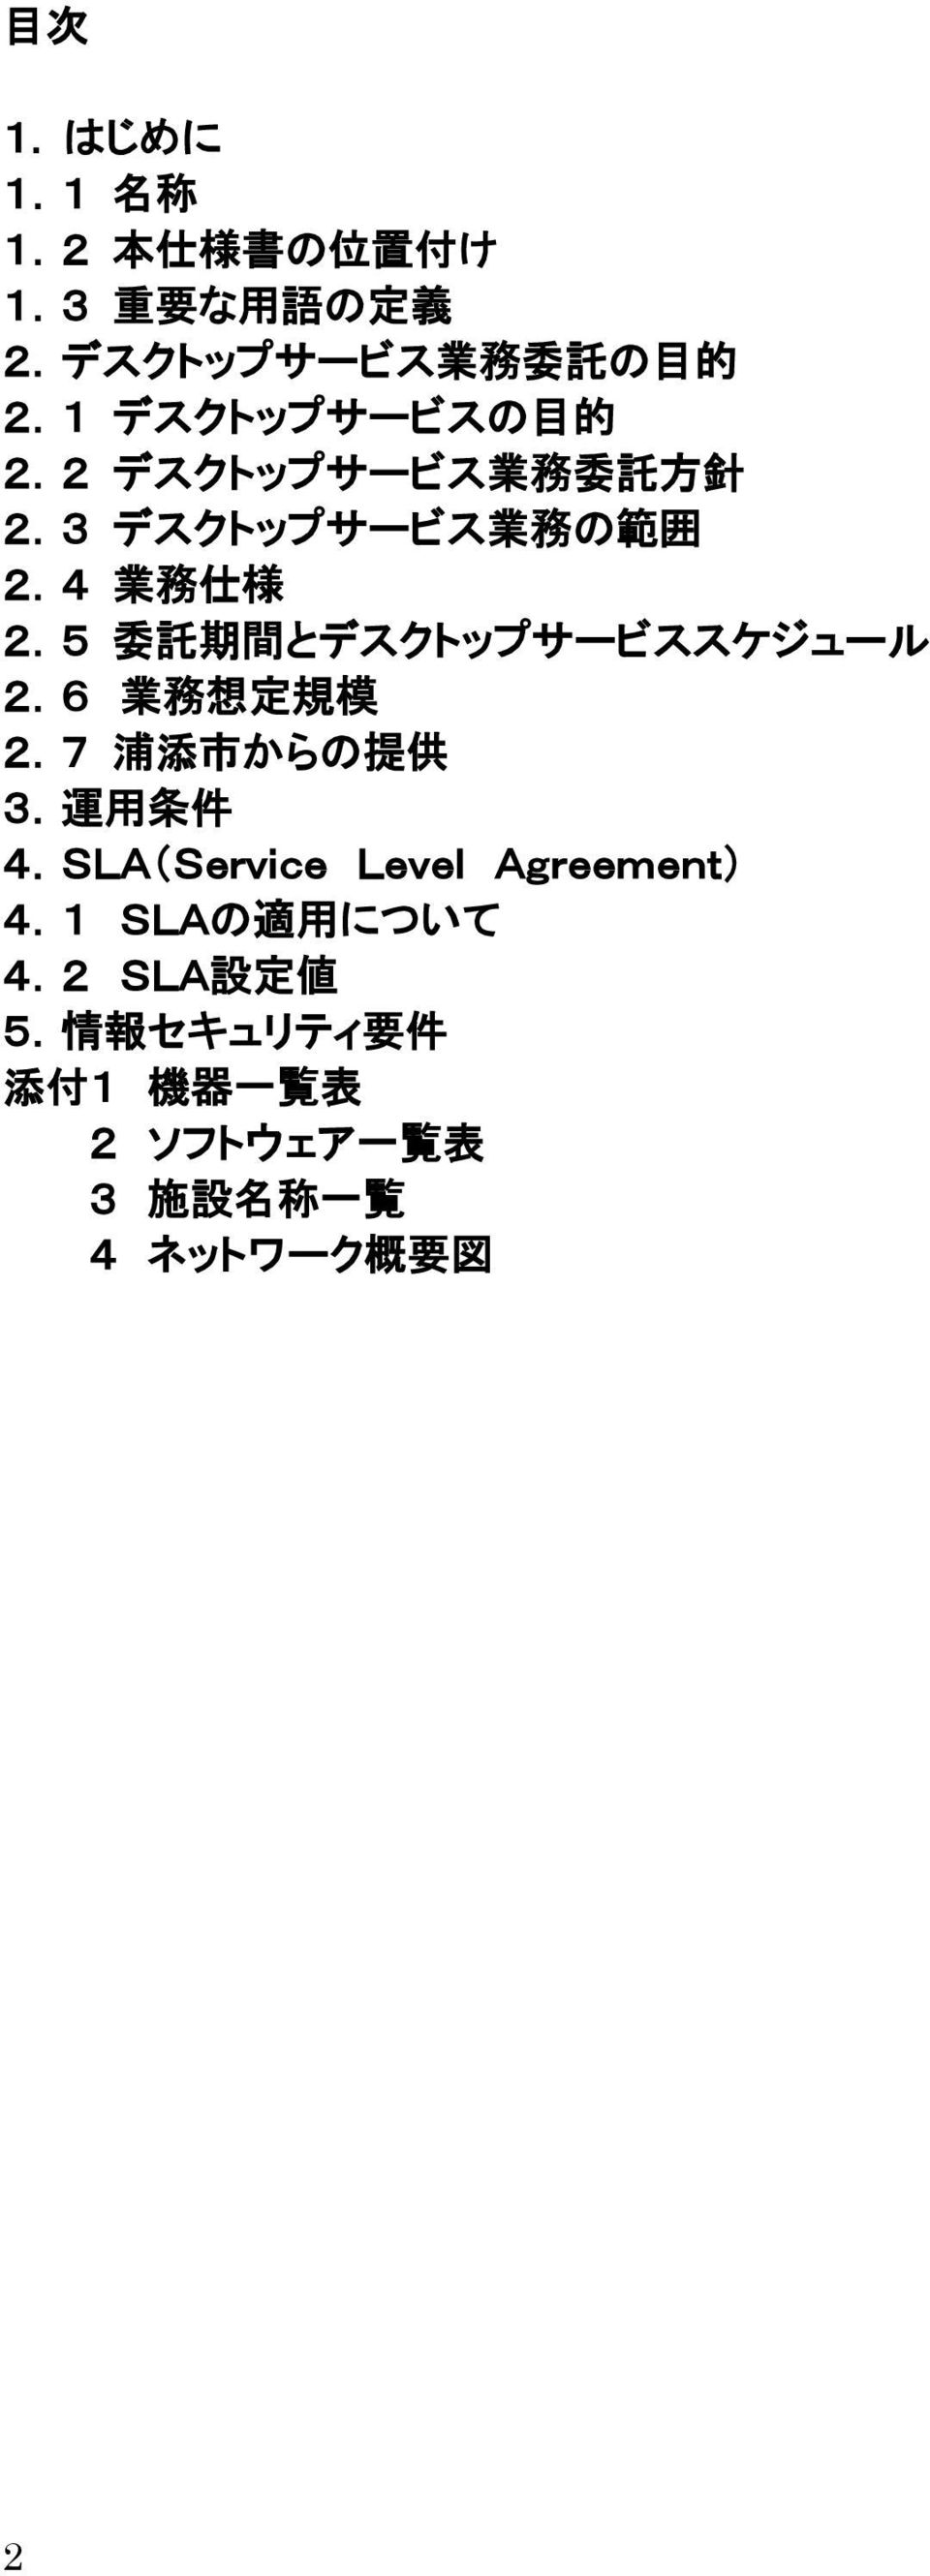 5 委 託 期 間 とデスクトップサービススケジュール 2.6 業 務 想 定 規 模 2.7 浦 添 市 からの 提 供 3. 運 用 条 件 4.